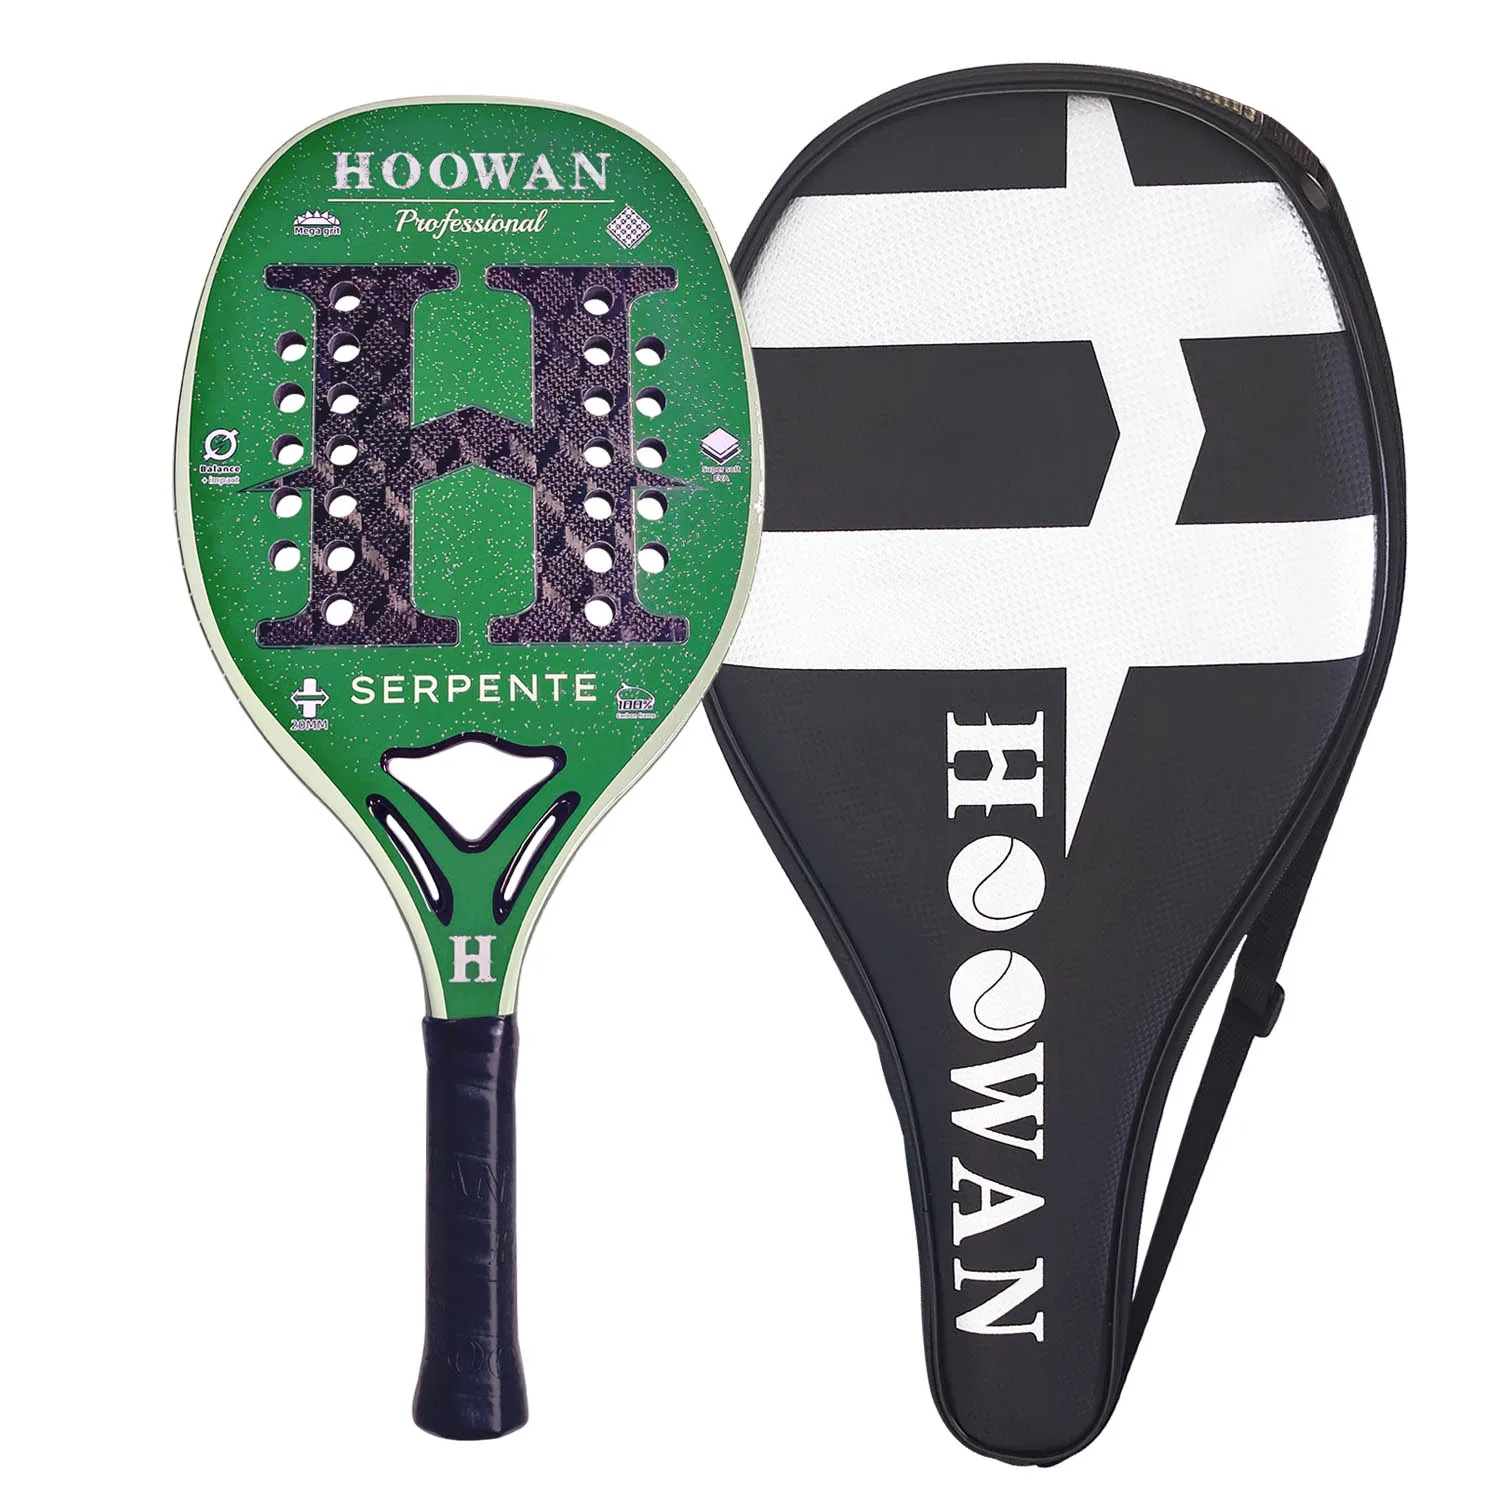 HOOWAN Serpente 3K Pro Beach Tennis Racket Carbon Fiber 3K Rhombus Woven 100% Professional Offensive Beach Tennis Paddle